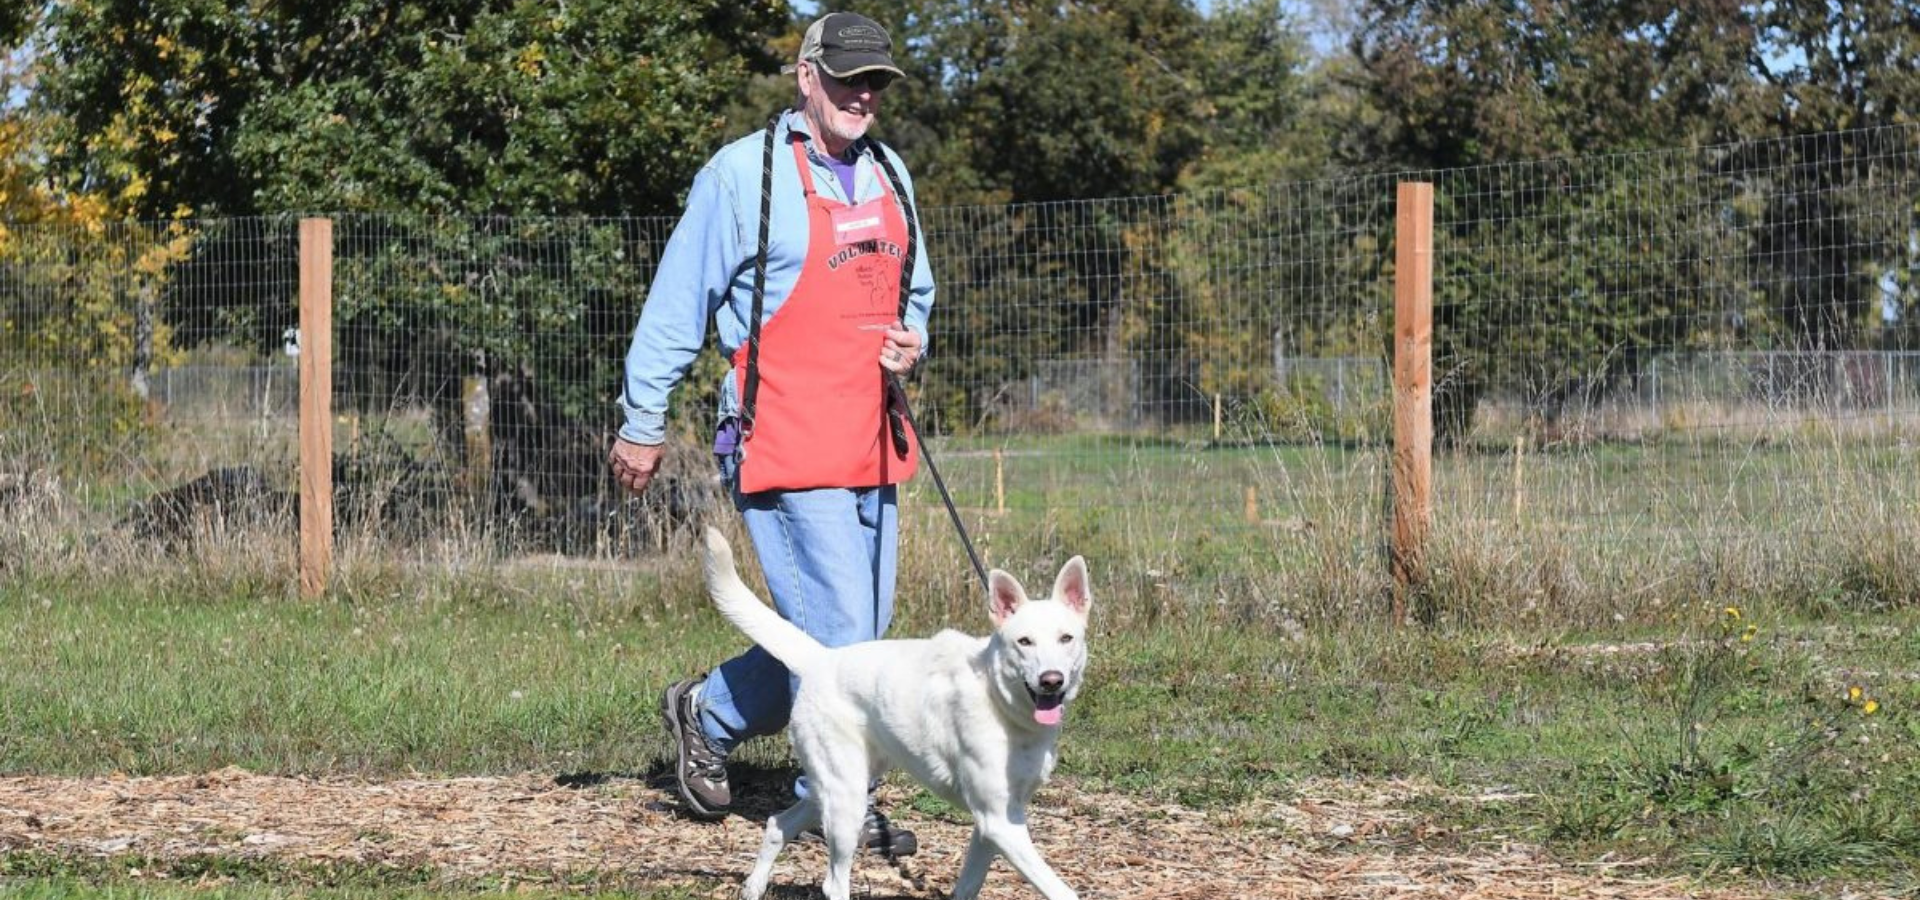 OHS Salem volunteer walking a shelter dog